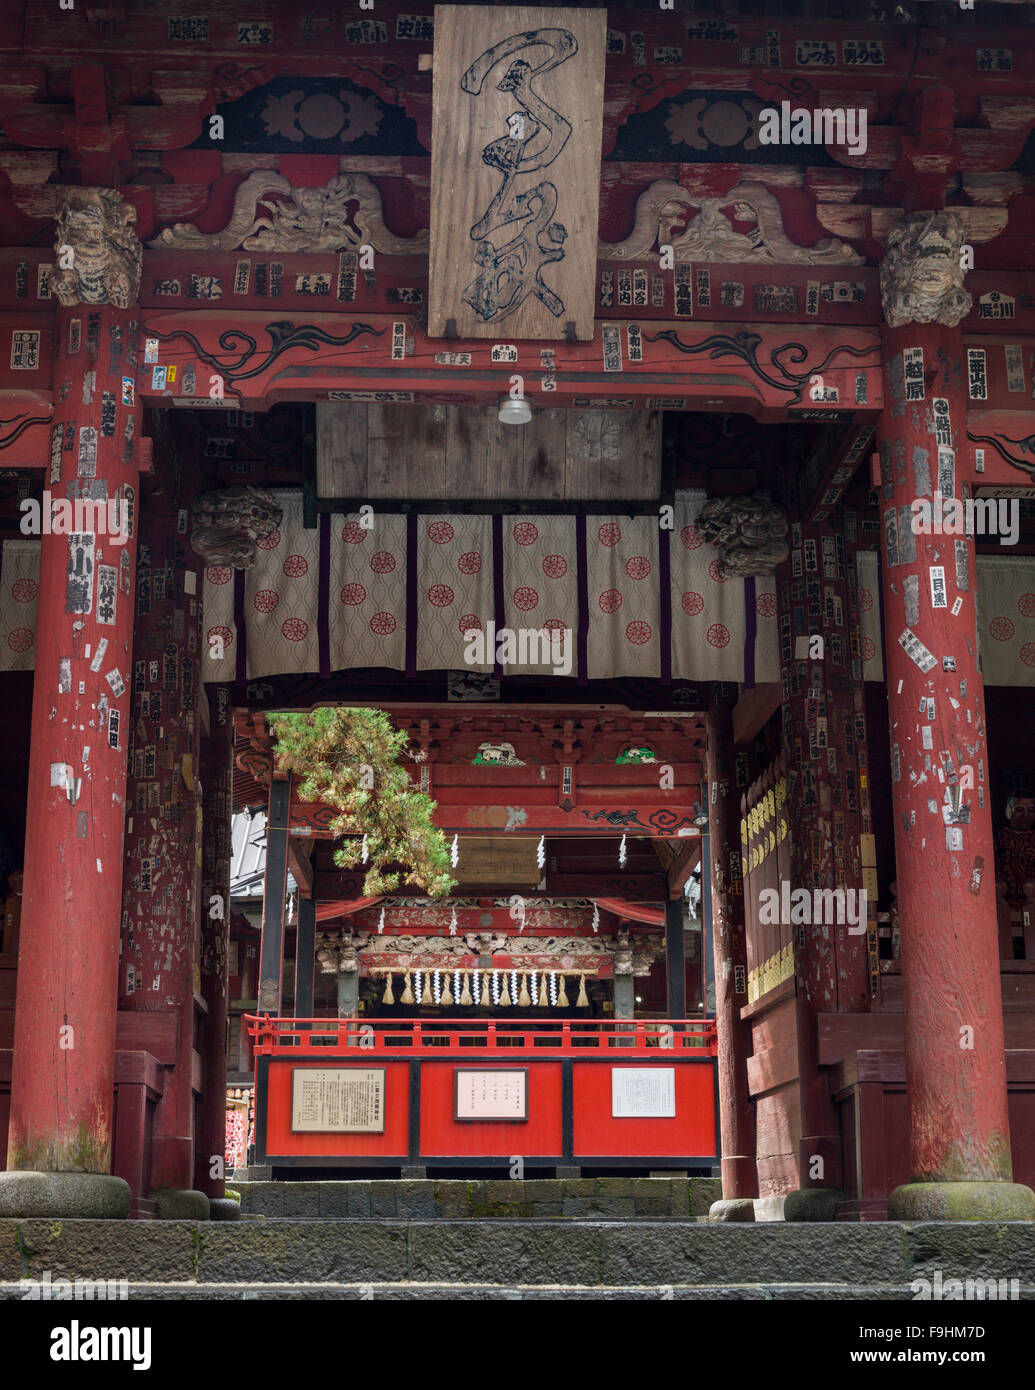 Sengen shrine fuji-yoshida japan Stock Photo